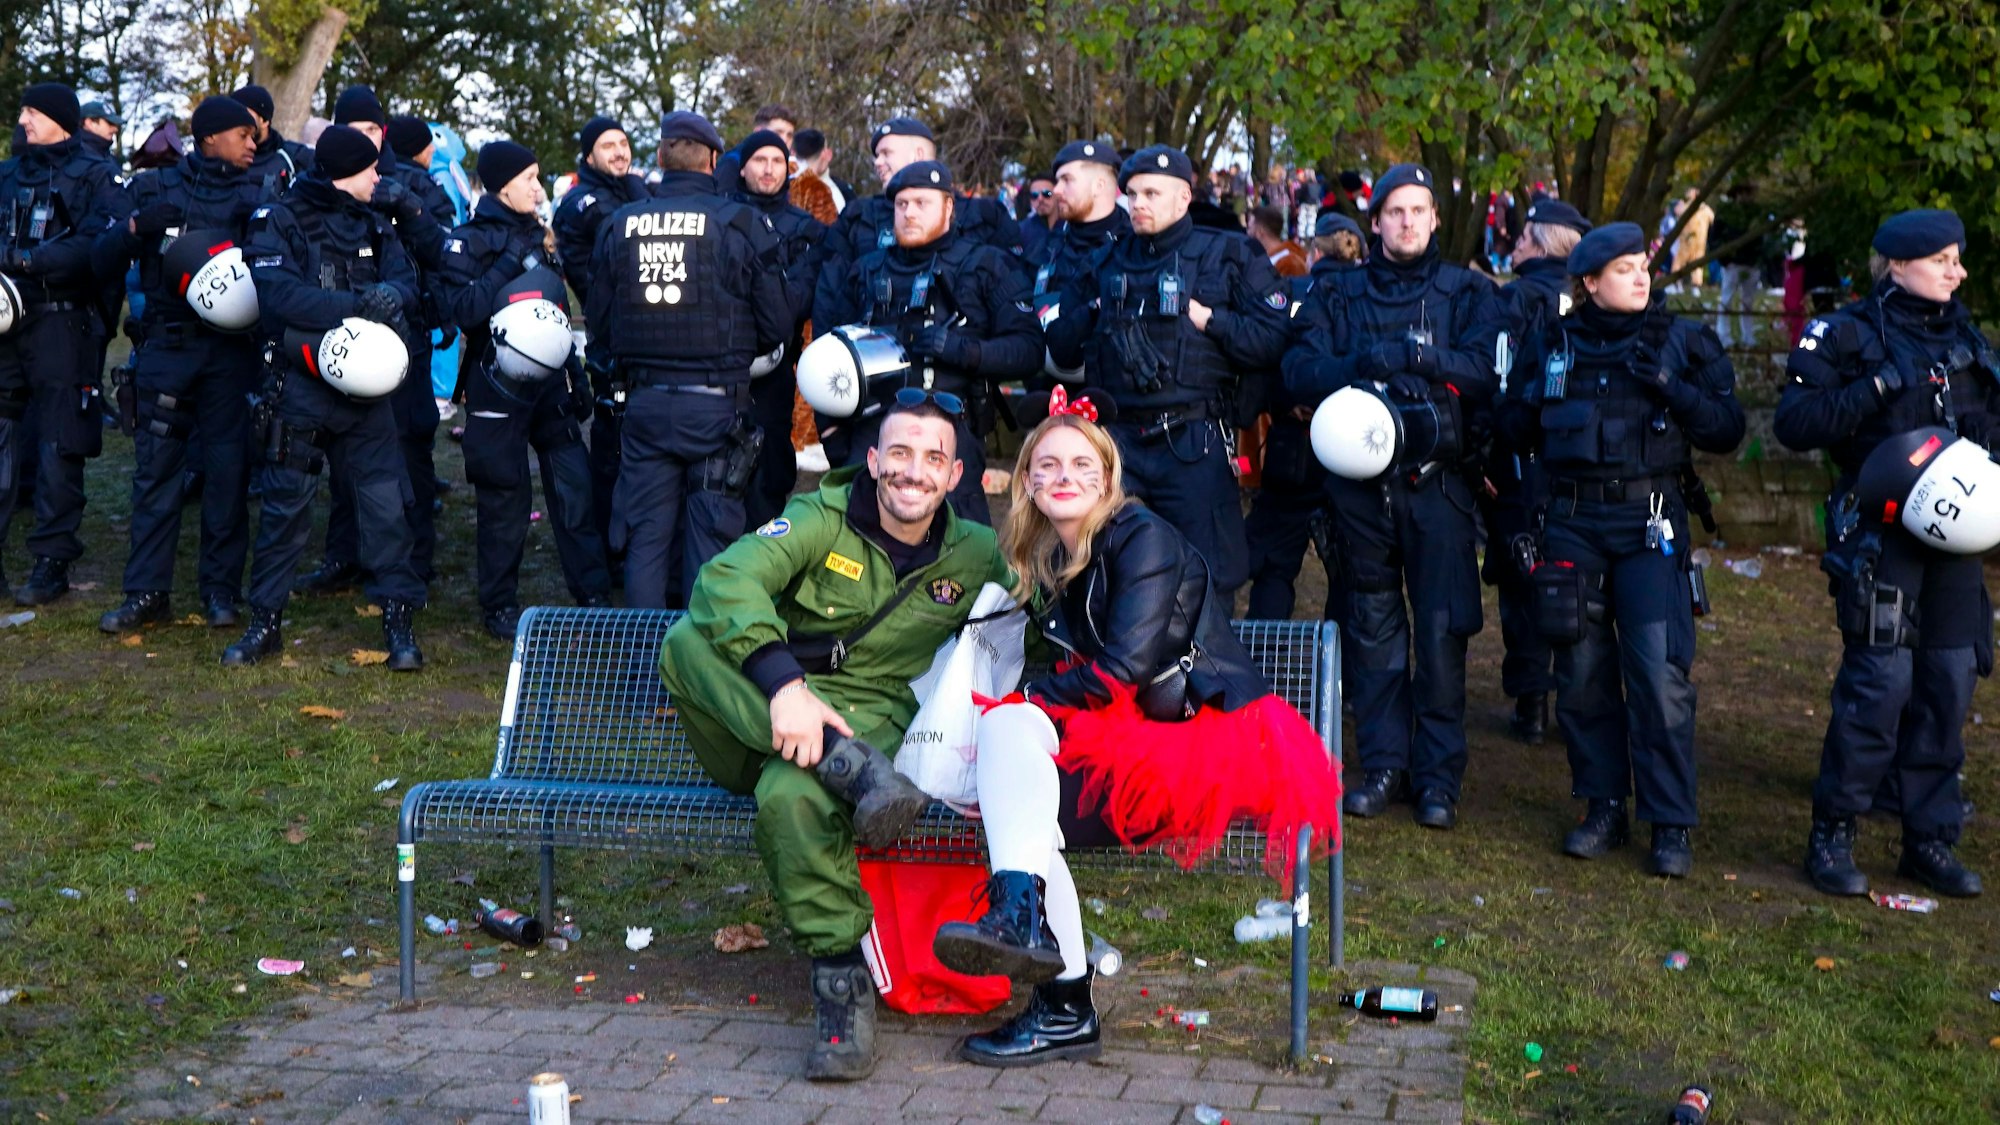 Kuriose Szene auch am Aachener Weiher: zwei Feiernde sitzen auf einer Bank, die Polizei ist mit einem massiven Aufgebot vor Ort.